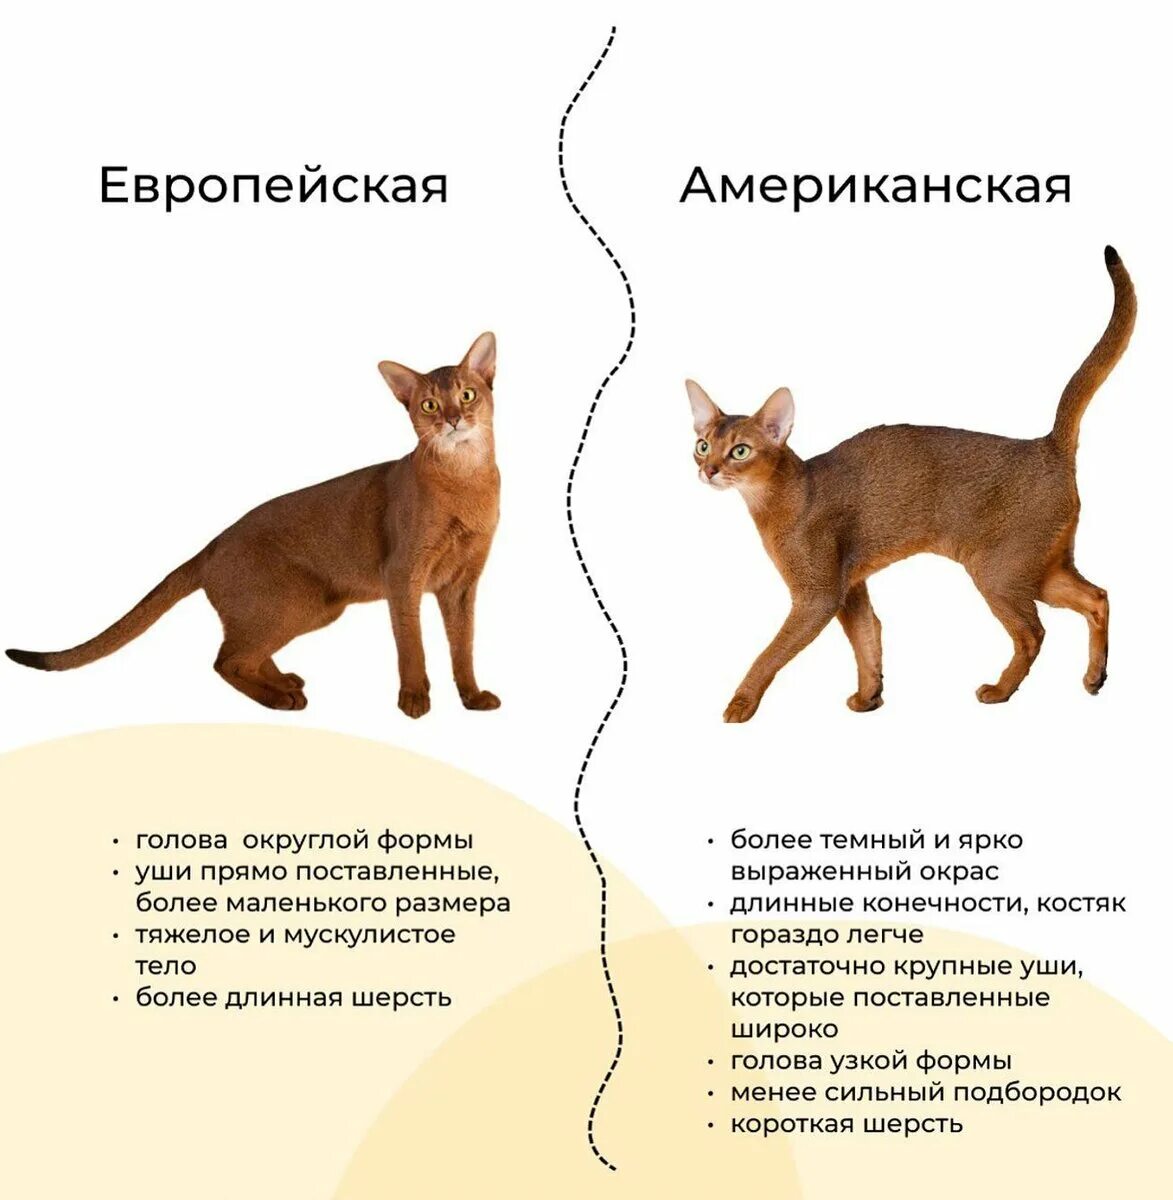 Кот Абиссинской породы. Европейская Абиссинская кошка и американская различия. Абиссинская кошка европейского типа и американского. Абиссинская кошка активная. Рассмотрите фотографию кошки породы абиссинская и выполните